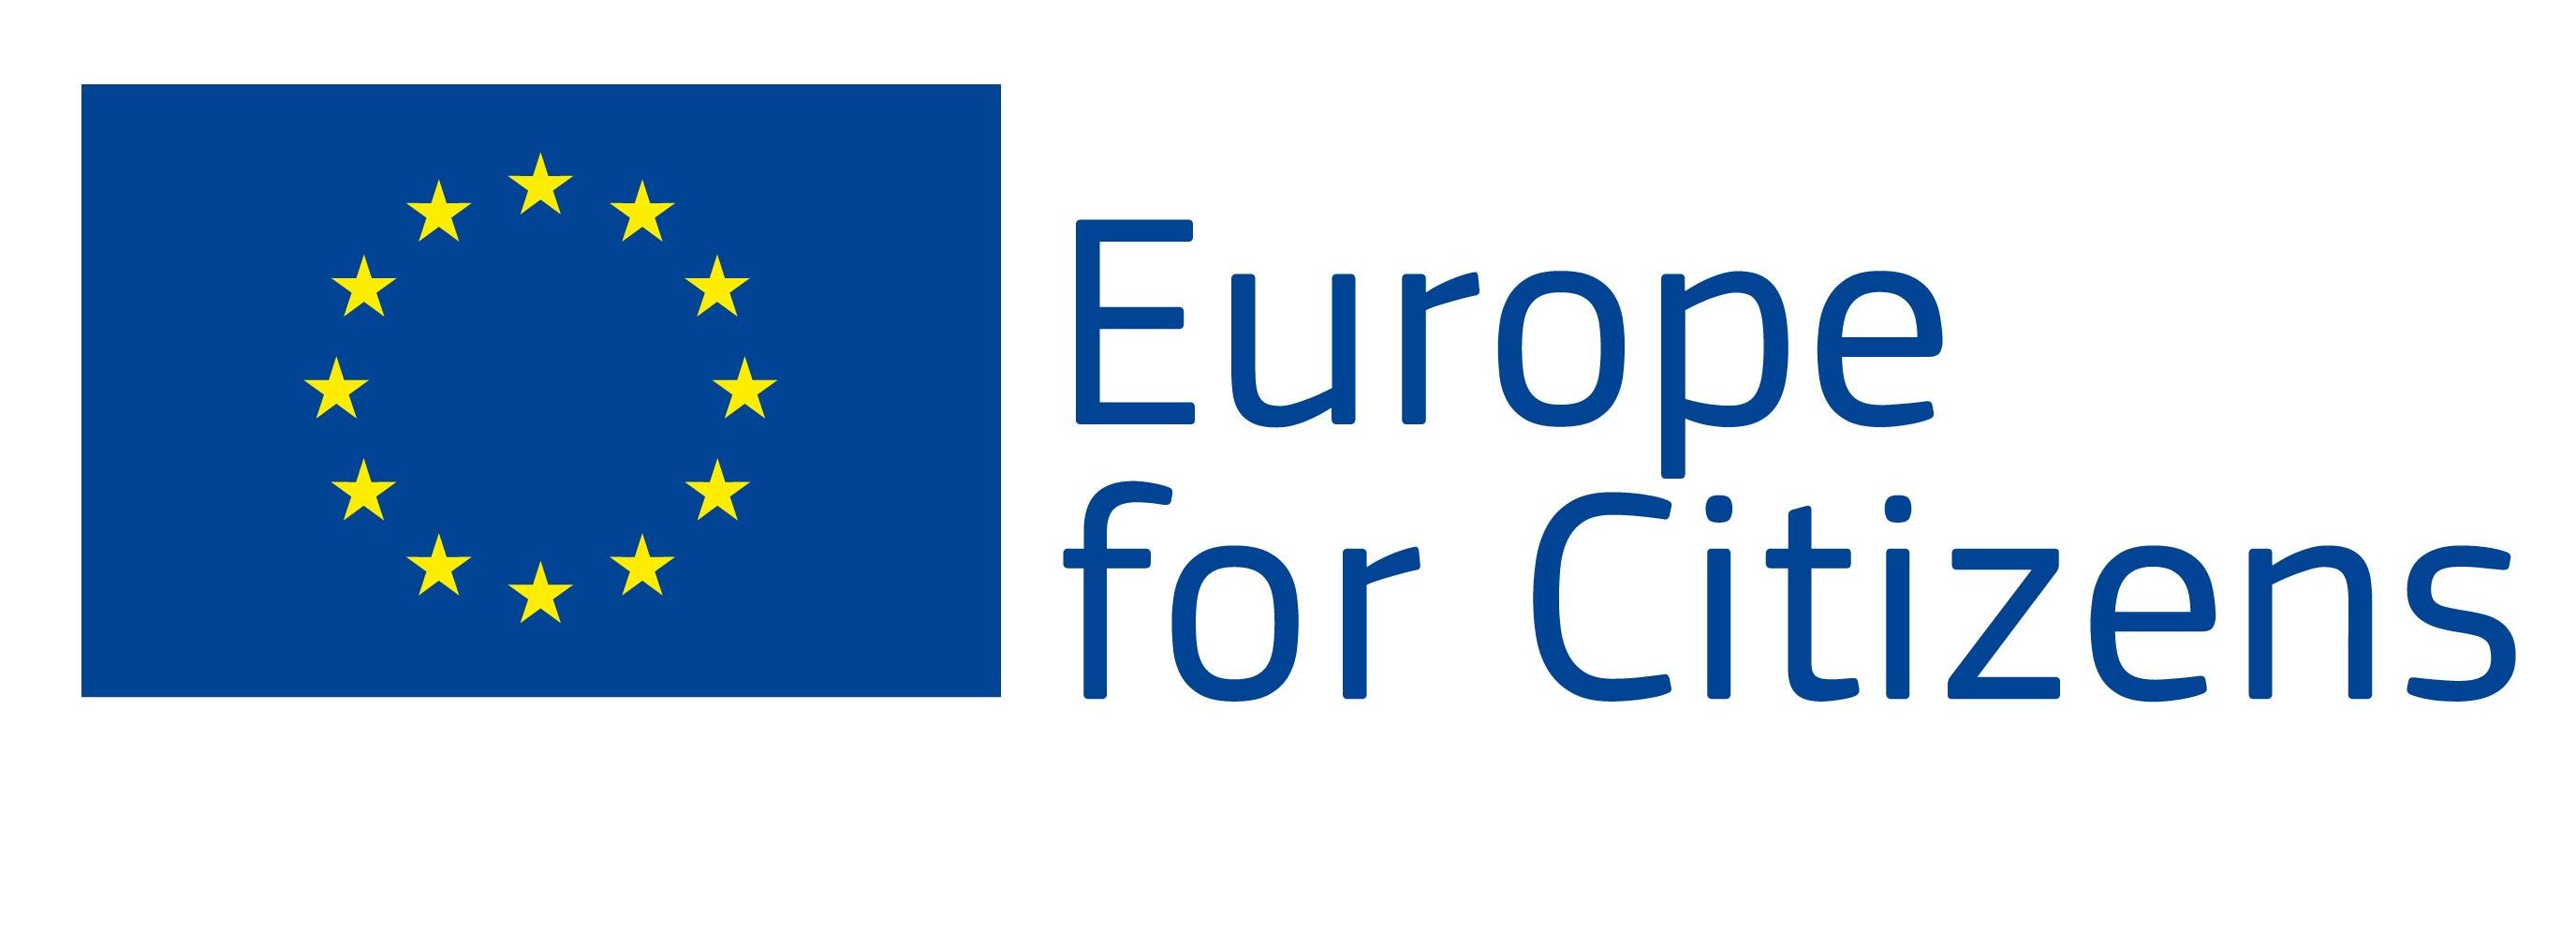 Espanha, Estónia, Hungria e Itália reúnem-se em Barcelos para debater a participação cívica e democrática na EU